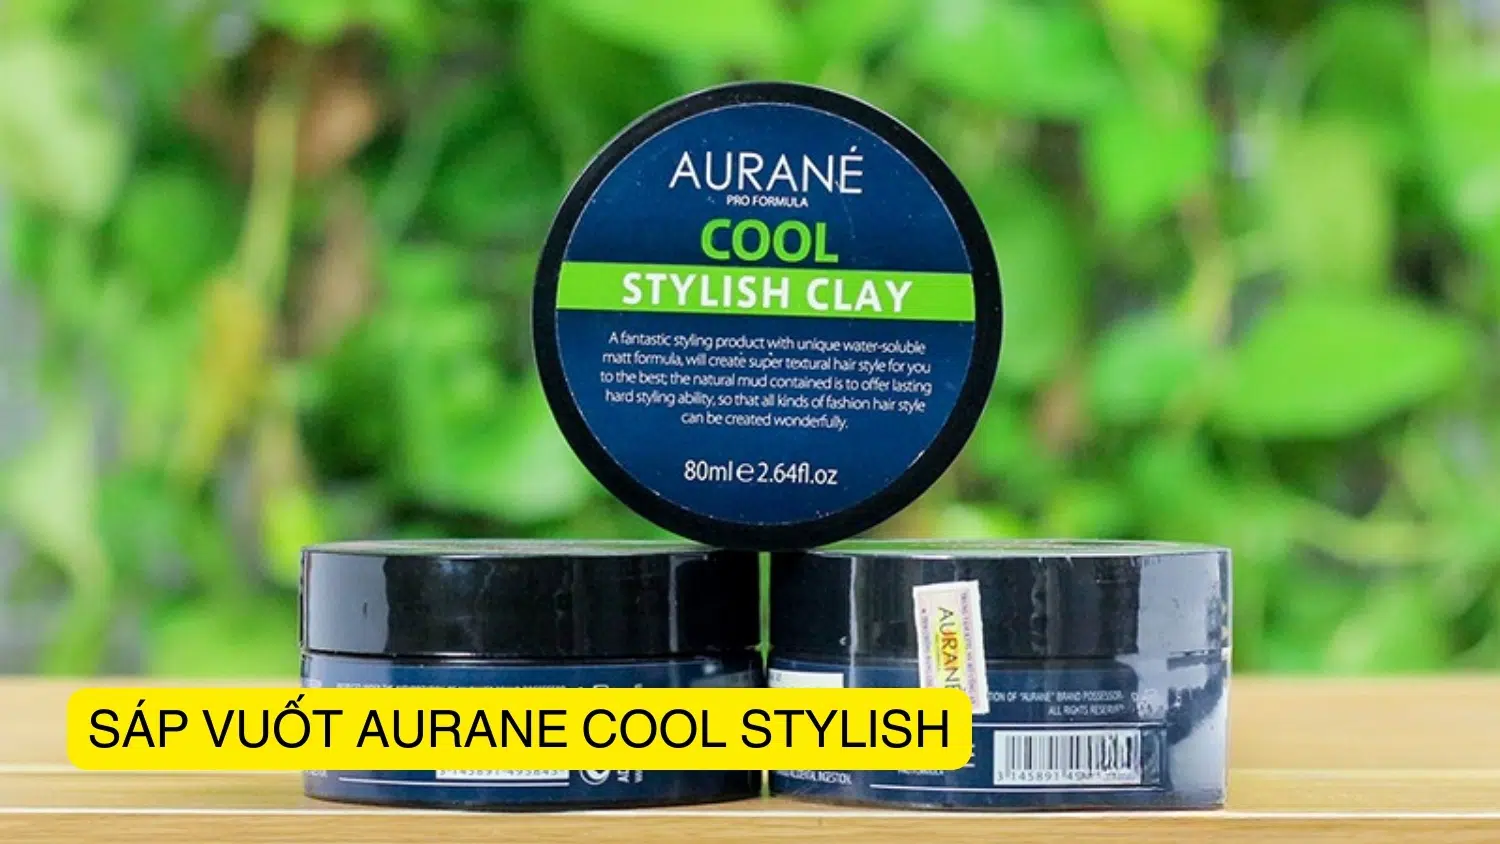 NĂM 2023] Sáp vuốt tóc Aurane Cool Stylish Clay chính hãng AURANÉ